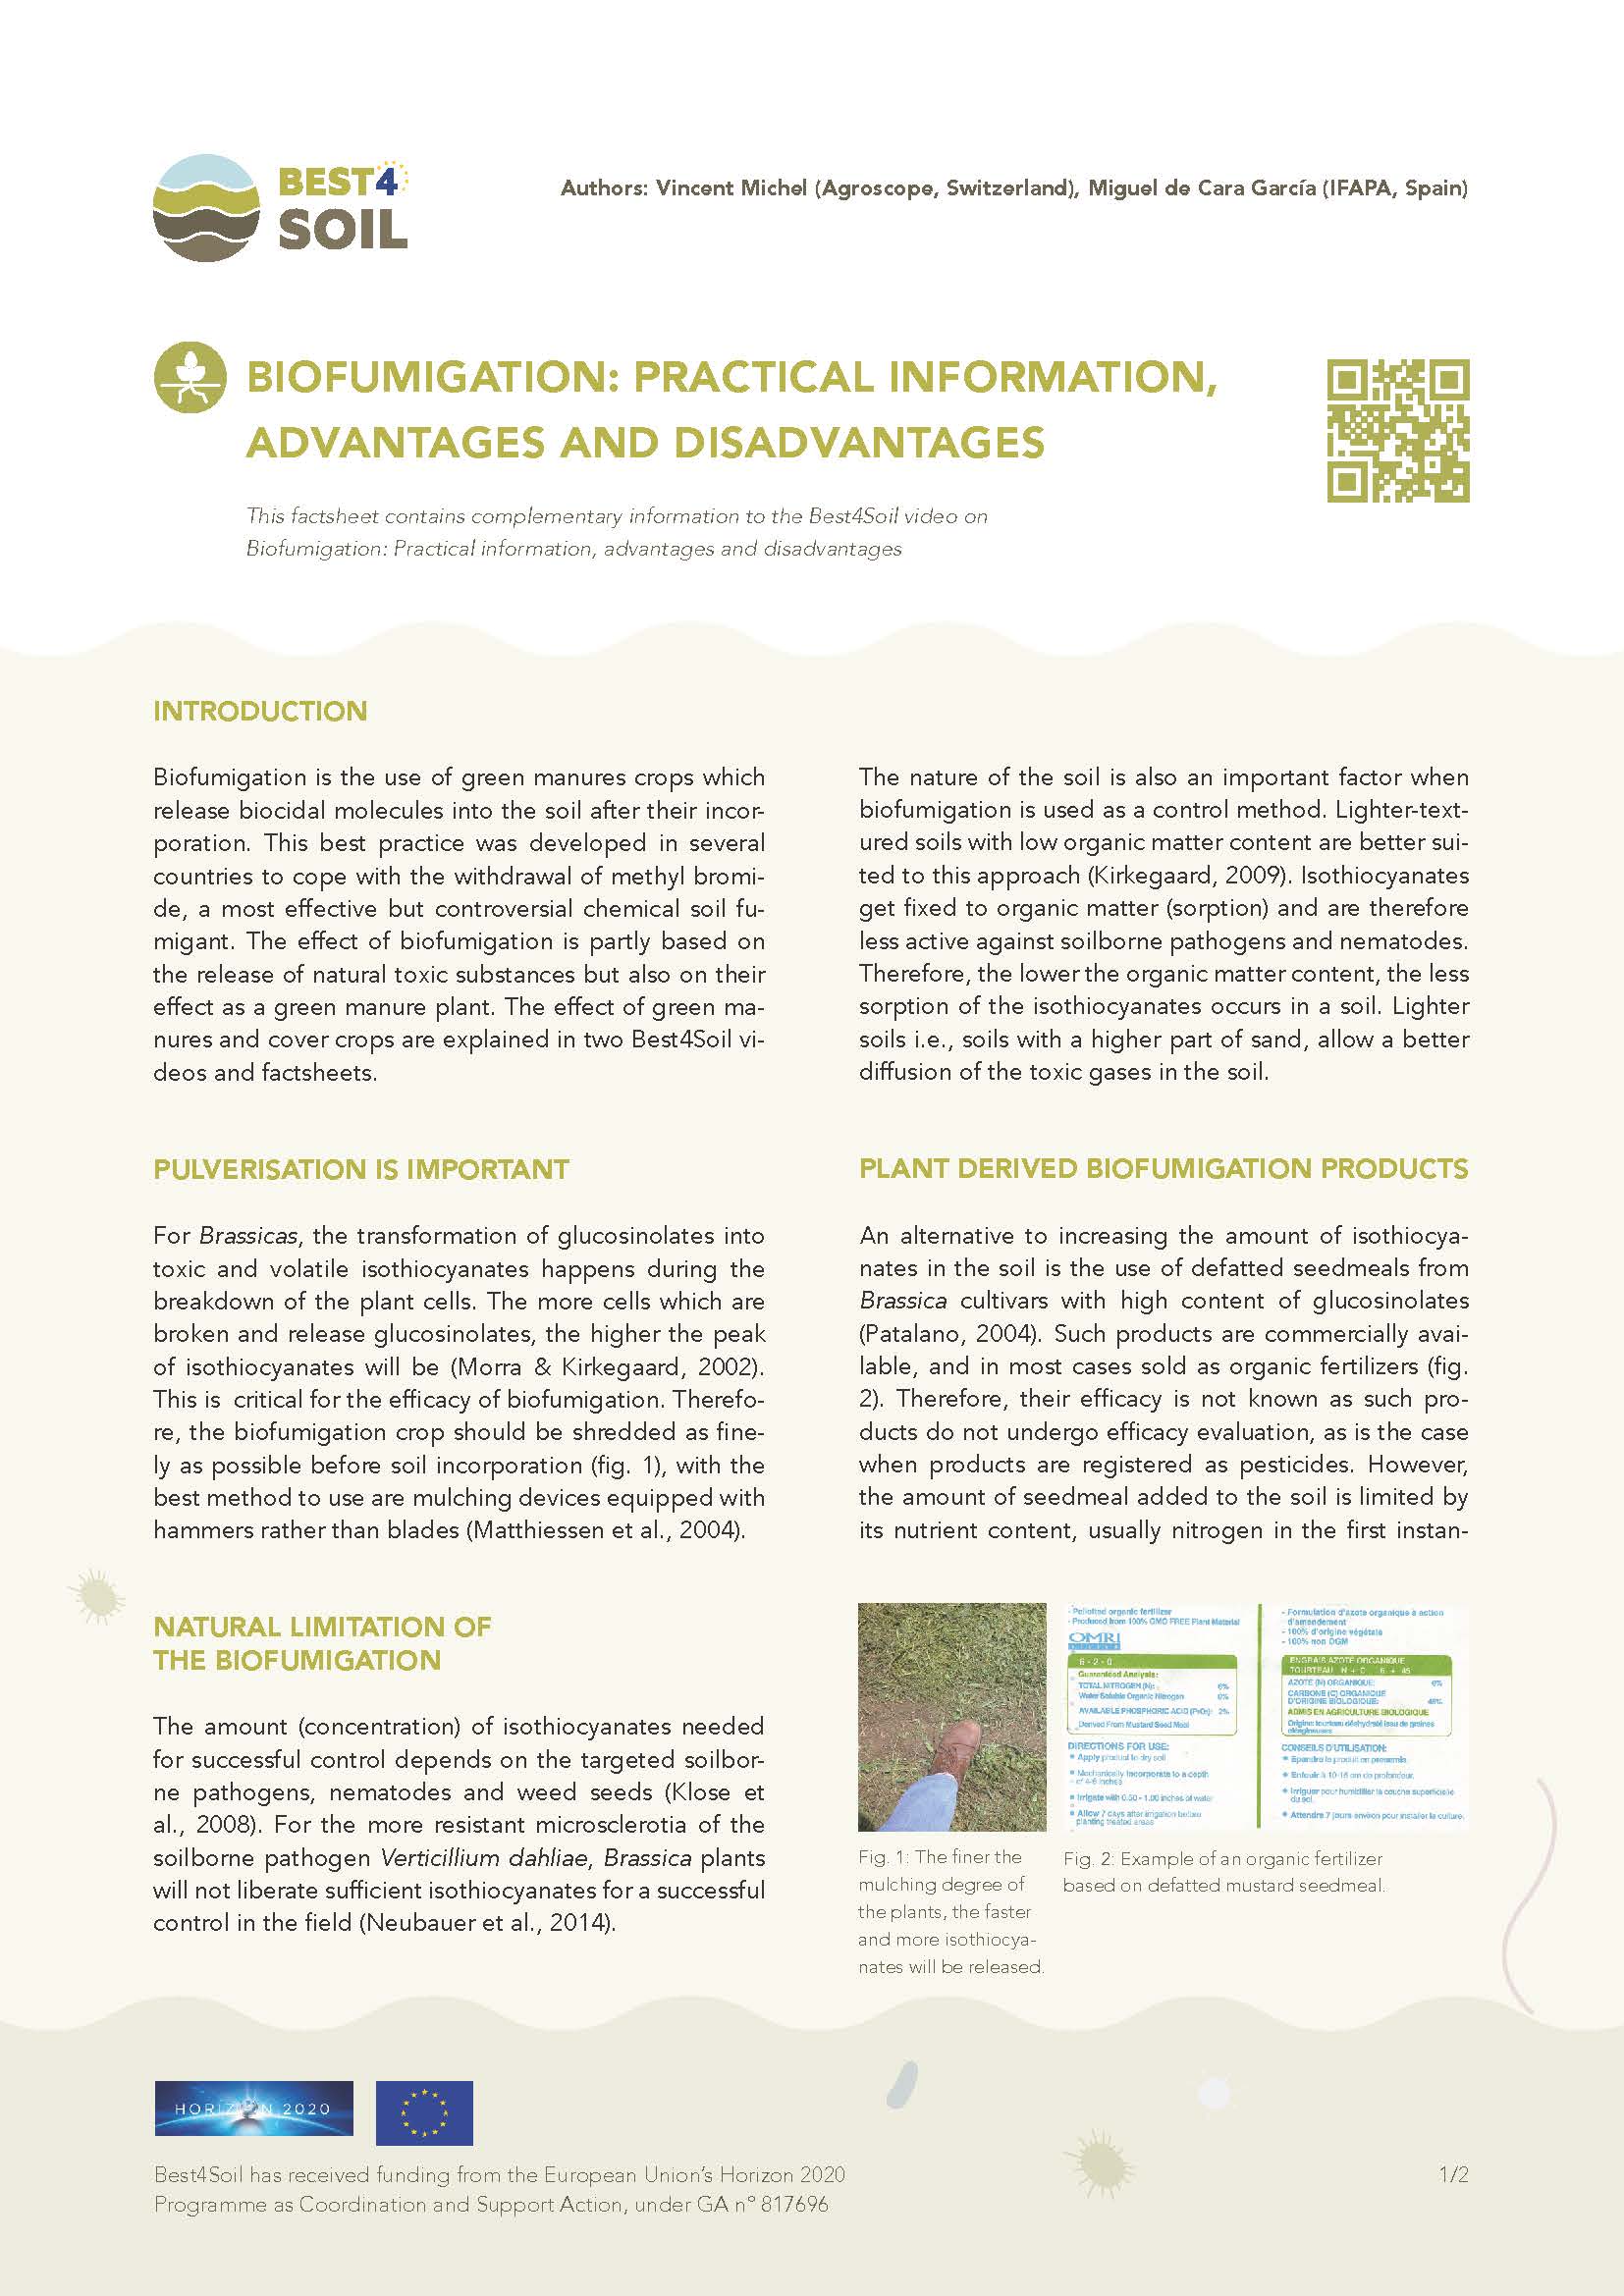 Biofumigation : Informations pratiques, avantages et inconvénients (Best4Soil Factsheet)